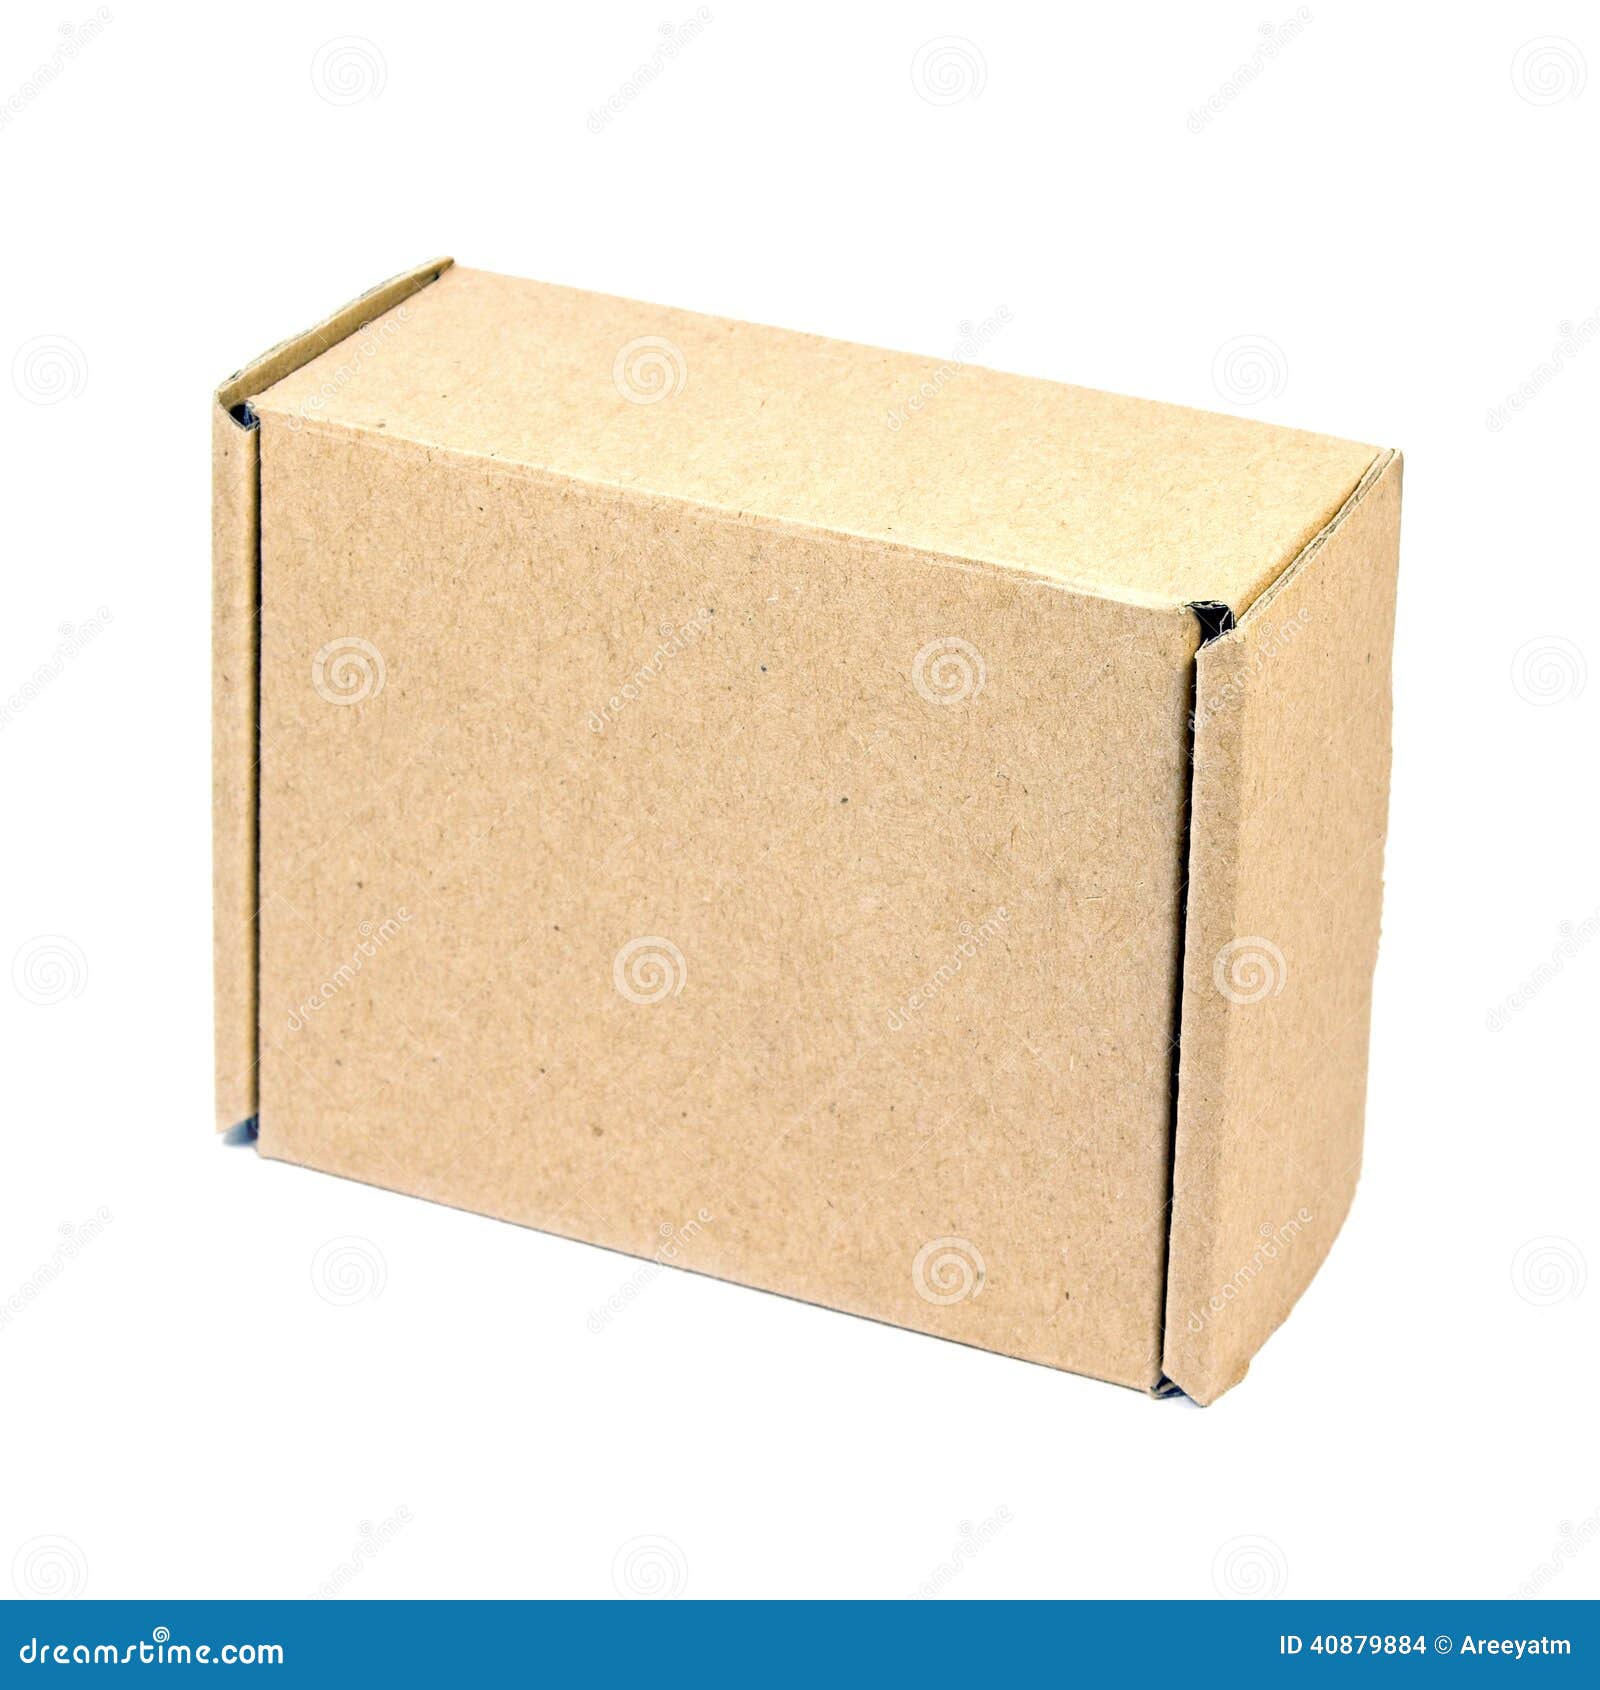 brown paper box.